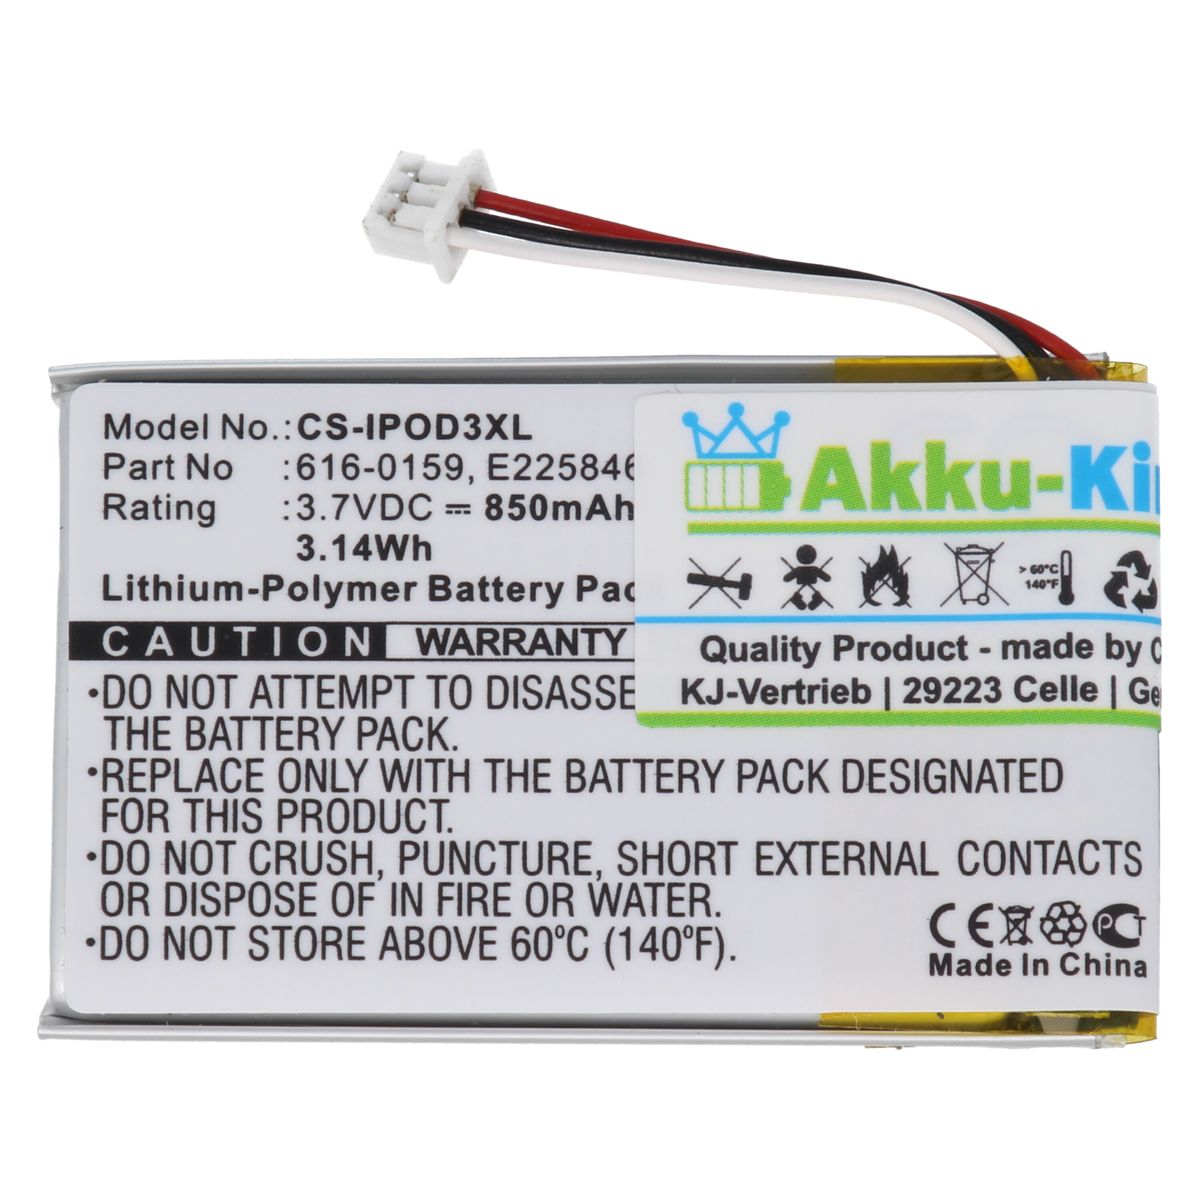 AKKU-KING Akku kompatibel Volt, 850mAh 616-0159 Apple mit Geräte-Akku, 3.7 Li-Polymer